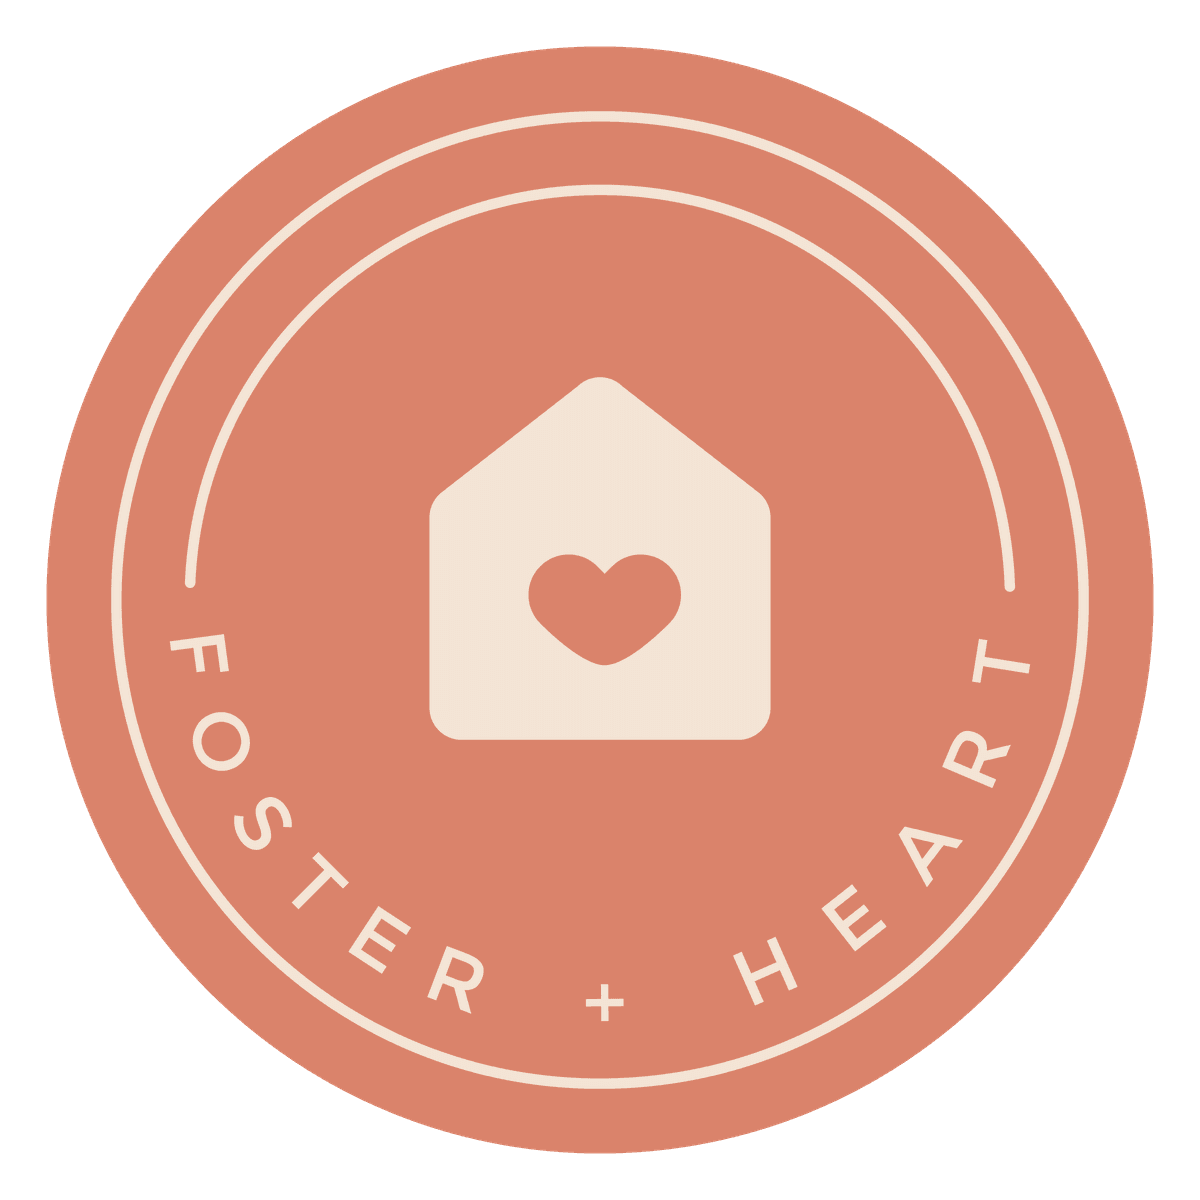 Foster + Heart logo